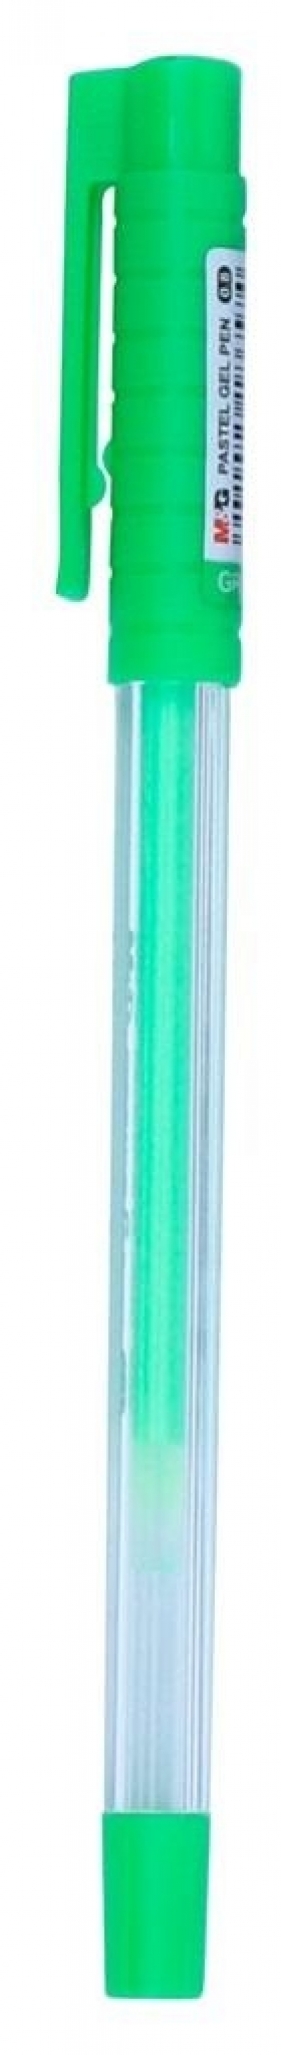 Długopis żelowy OfficeG 0.8mm fluo zielony (12szt)